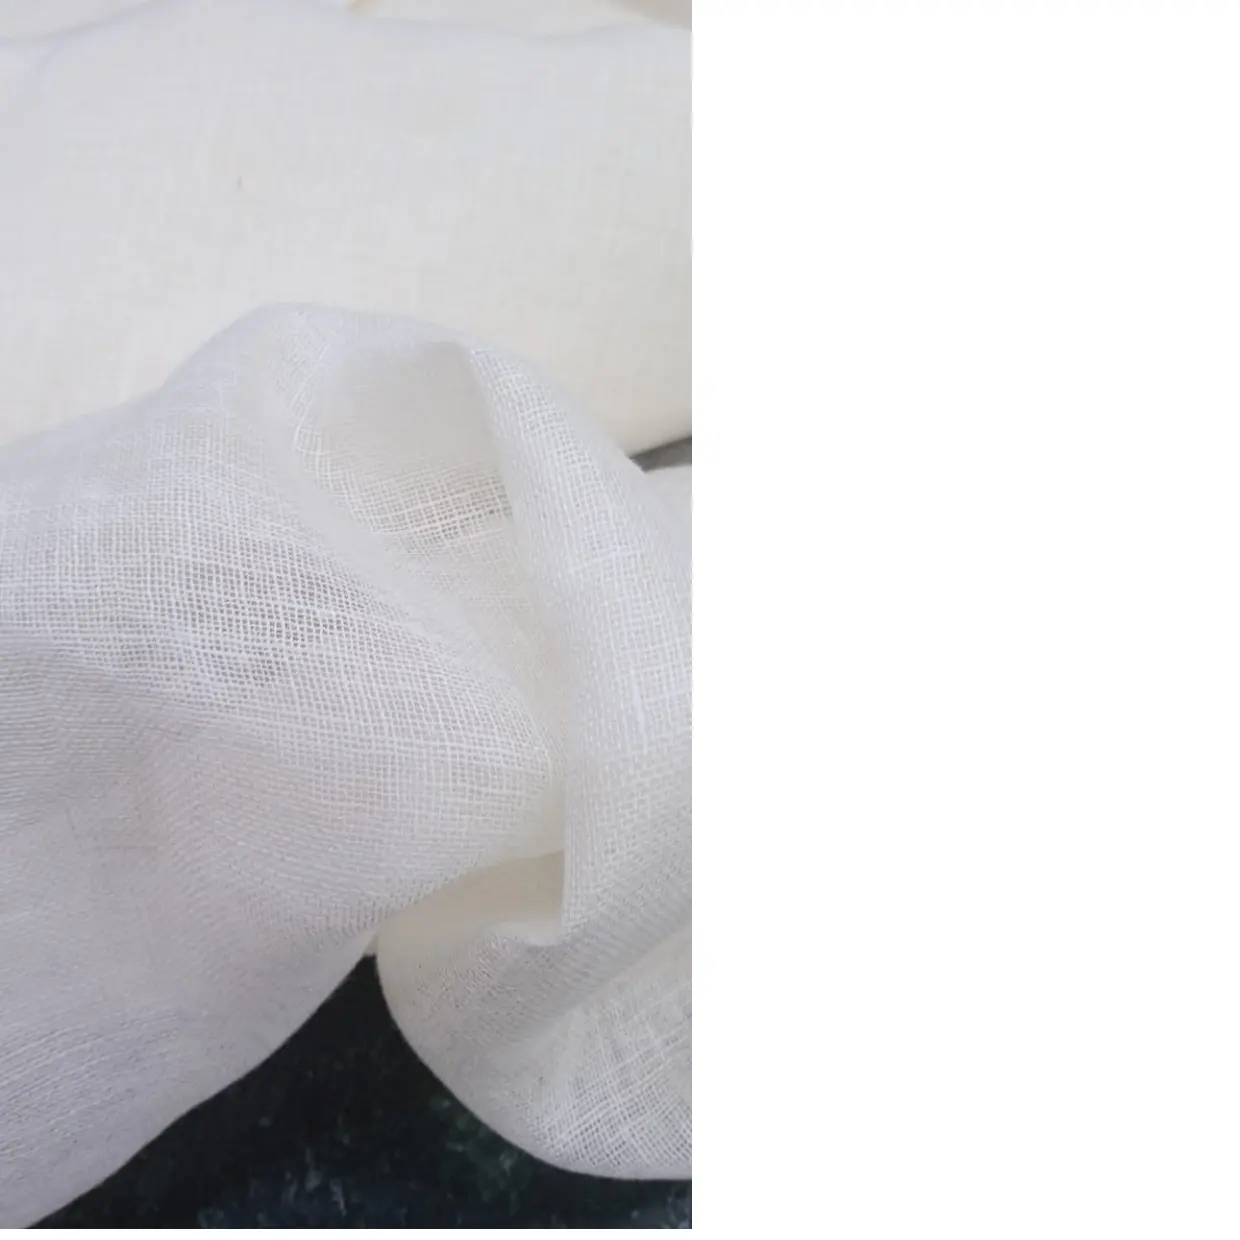 홈 퍼니 싱 원단으로 재판매하기에 적합한 커튼 및 홈 데코레이션에서 사용하기에 이상적인 맞춤형 투명한 린넨 원단